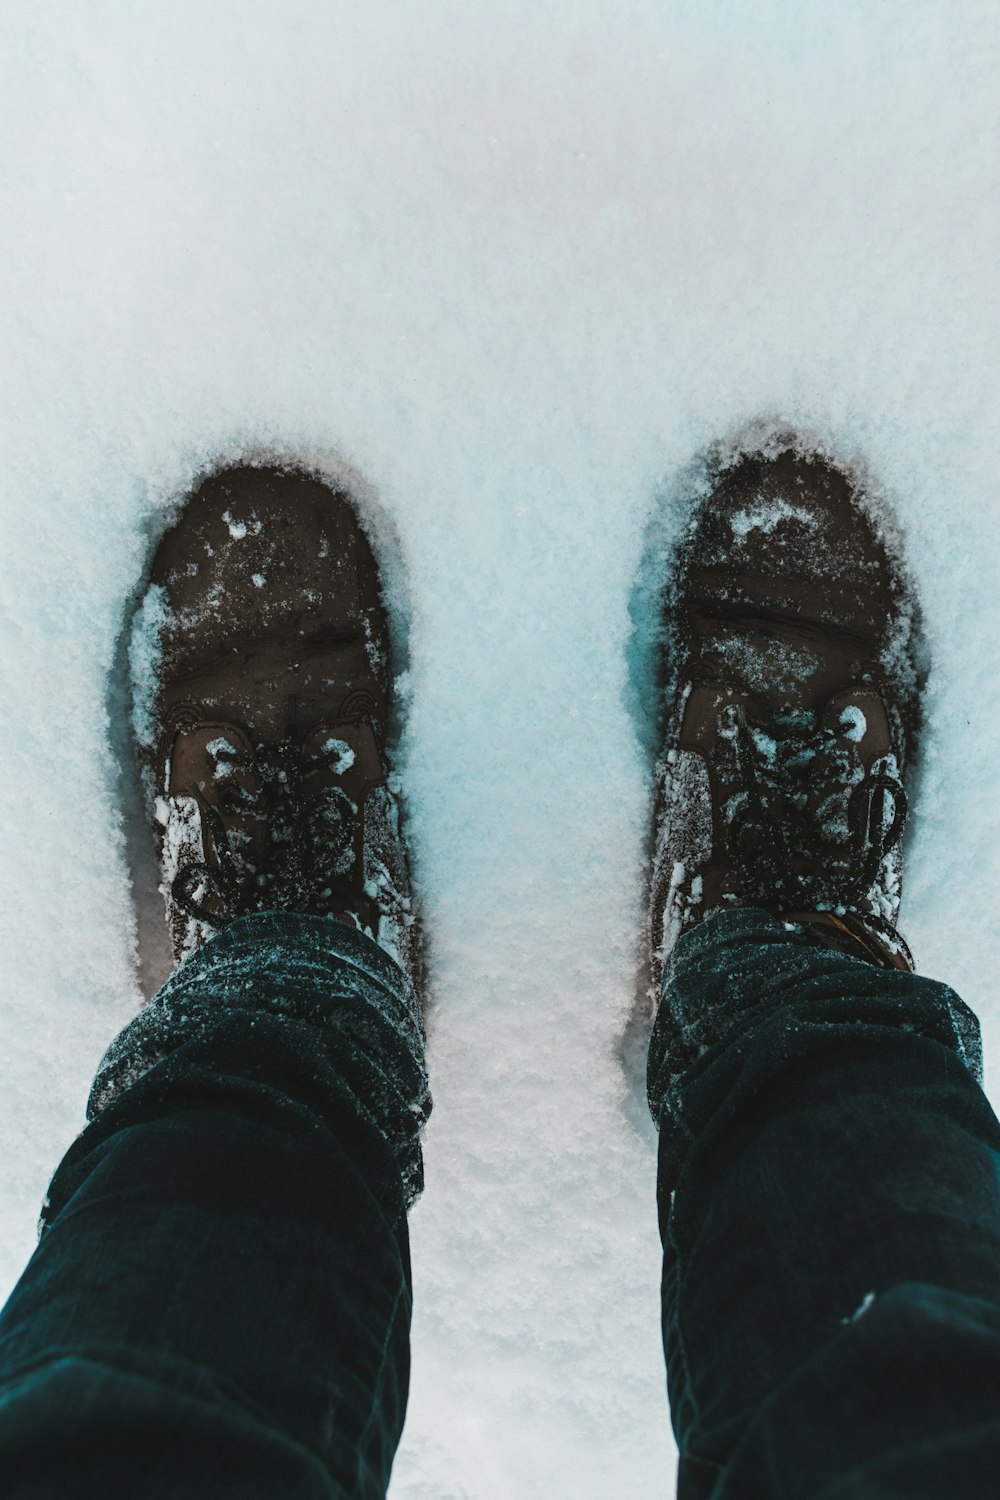 Person in schwarzen Hosen und schwarzen Schuhen, die auf schneebedecktem Boden steht